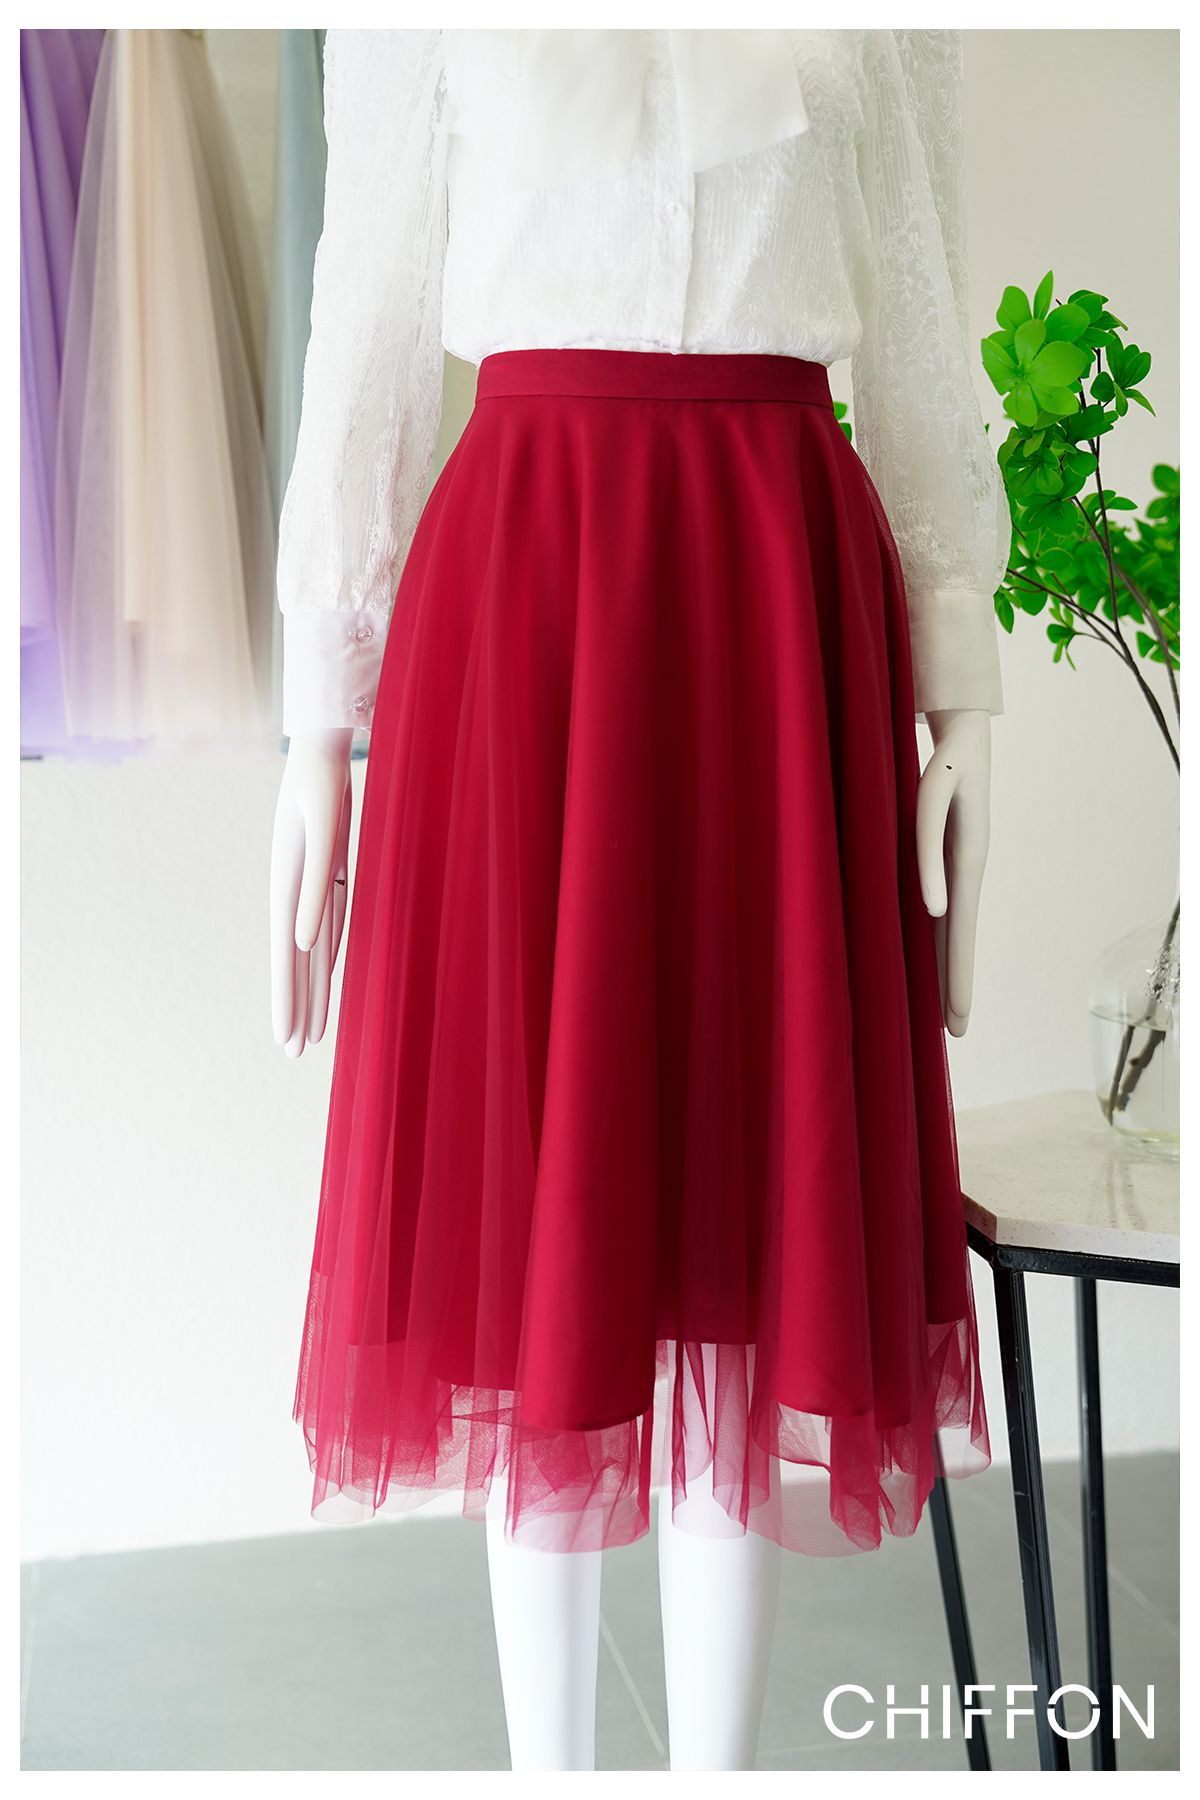 Chân váy midi xòe xếp ly màu đỏ CV03-35 | Thời trang công sở K&K Fashion